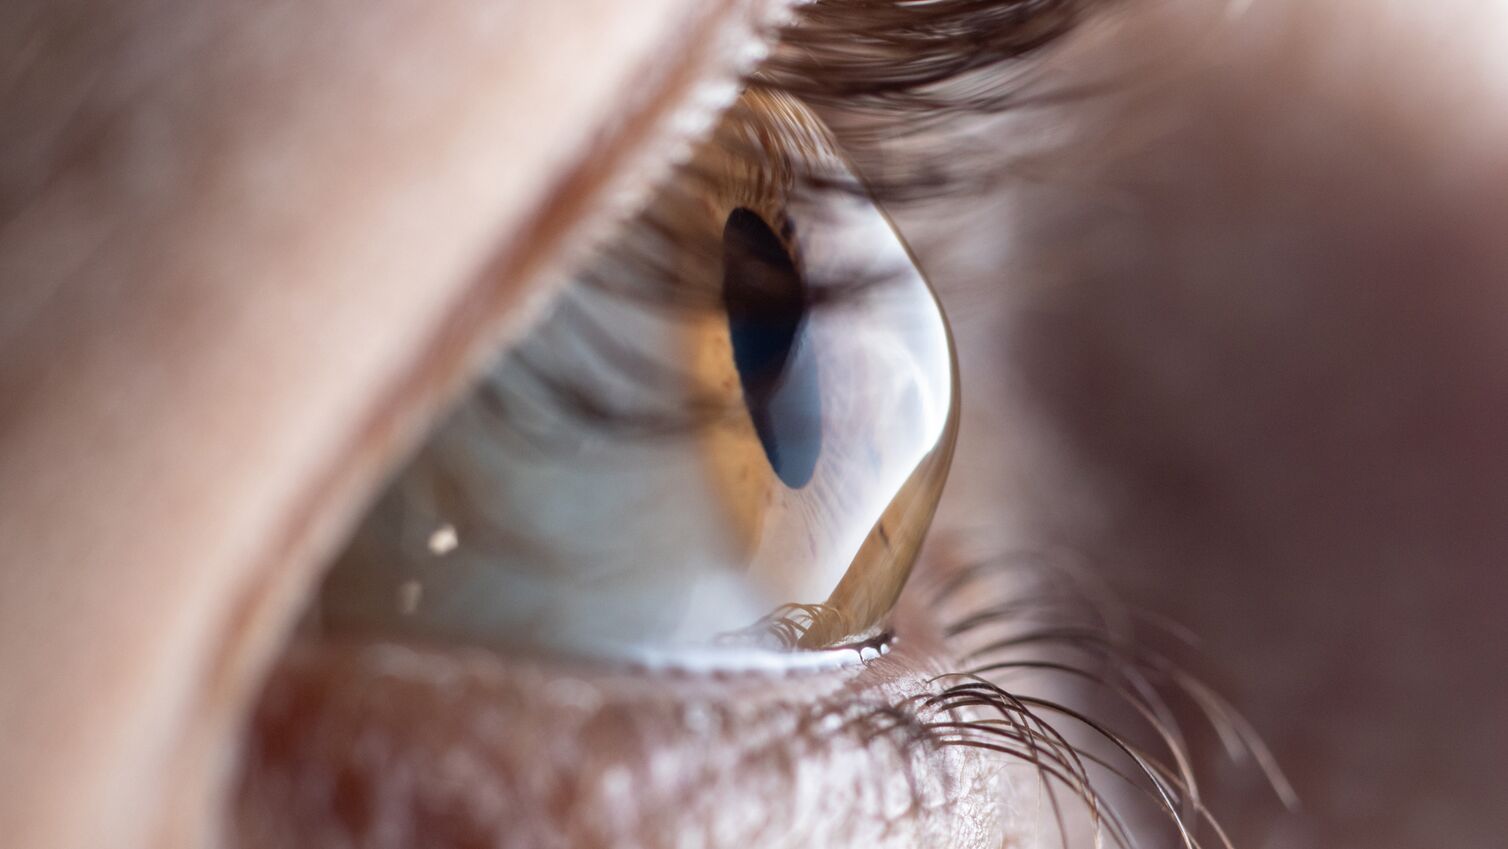 Detailaufnahme eines Auges zur Augenkrankheit Keratakonus